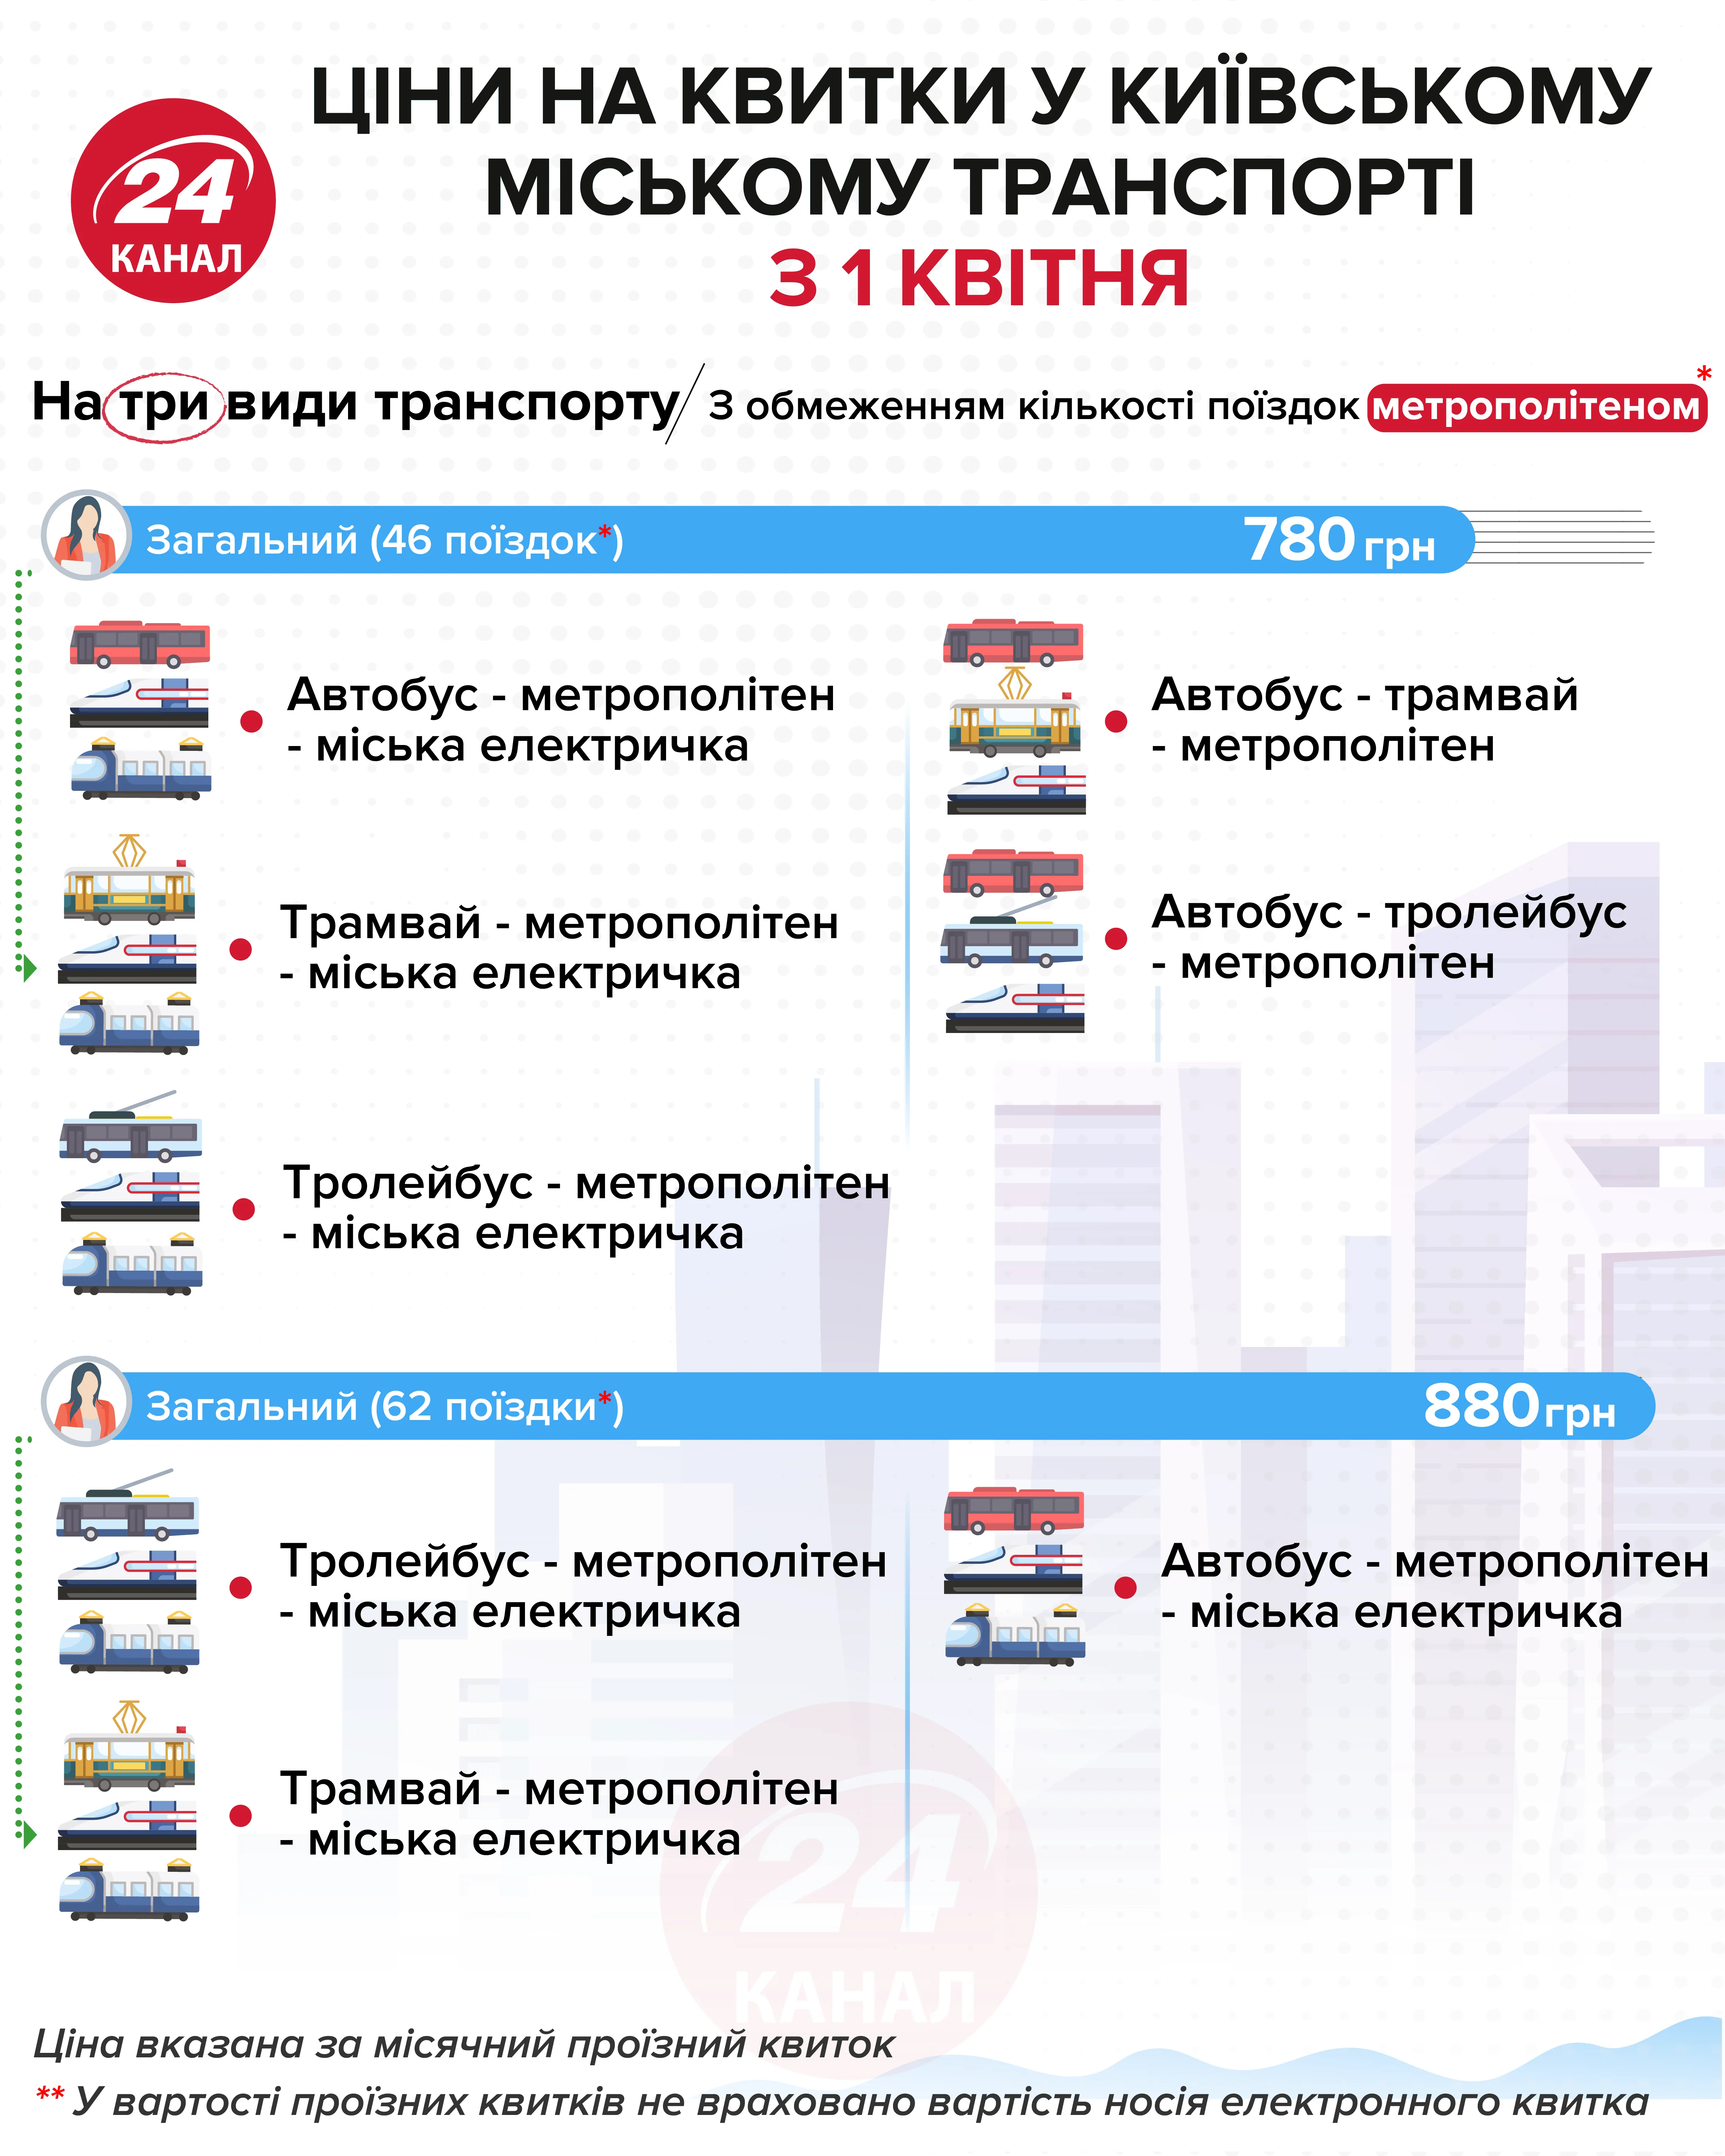 Стоимость проездного на три вида транспорта Инфографика 24 канала